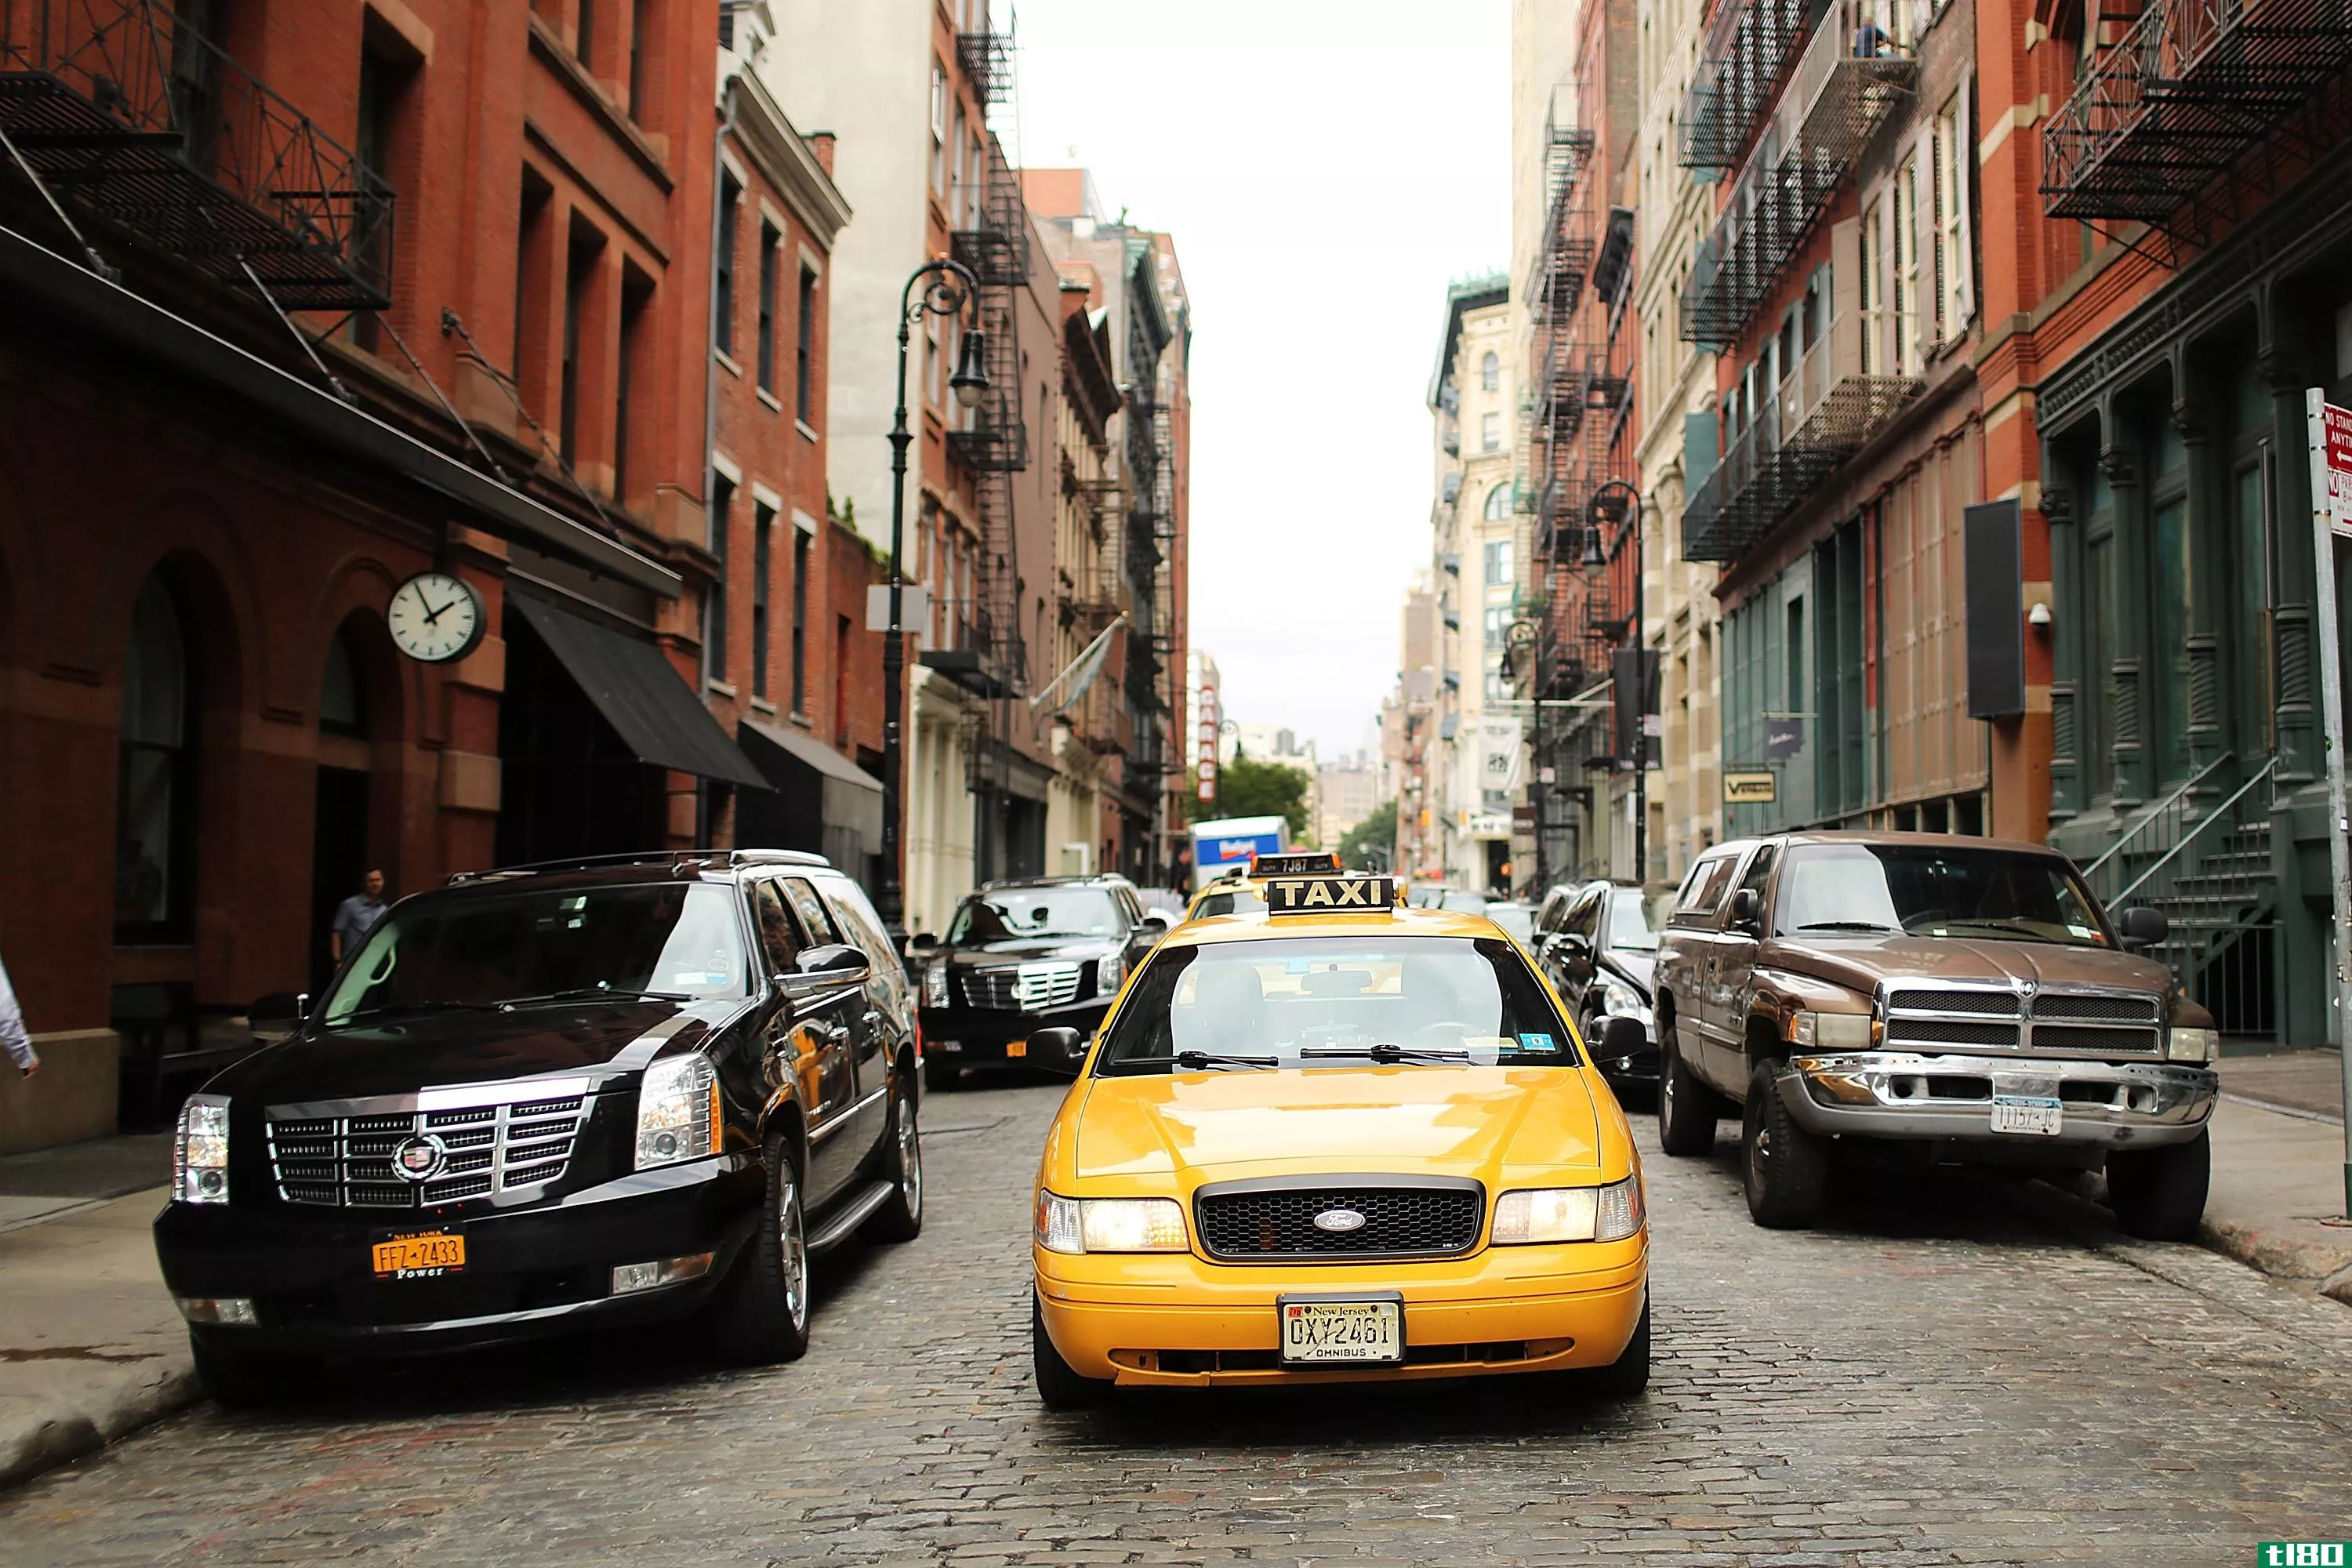 出租车招呼应用程序curb将重新推出针对uber的新攻击计划